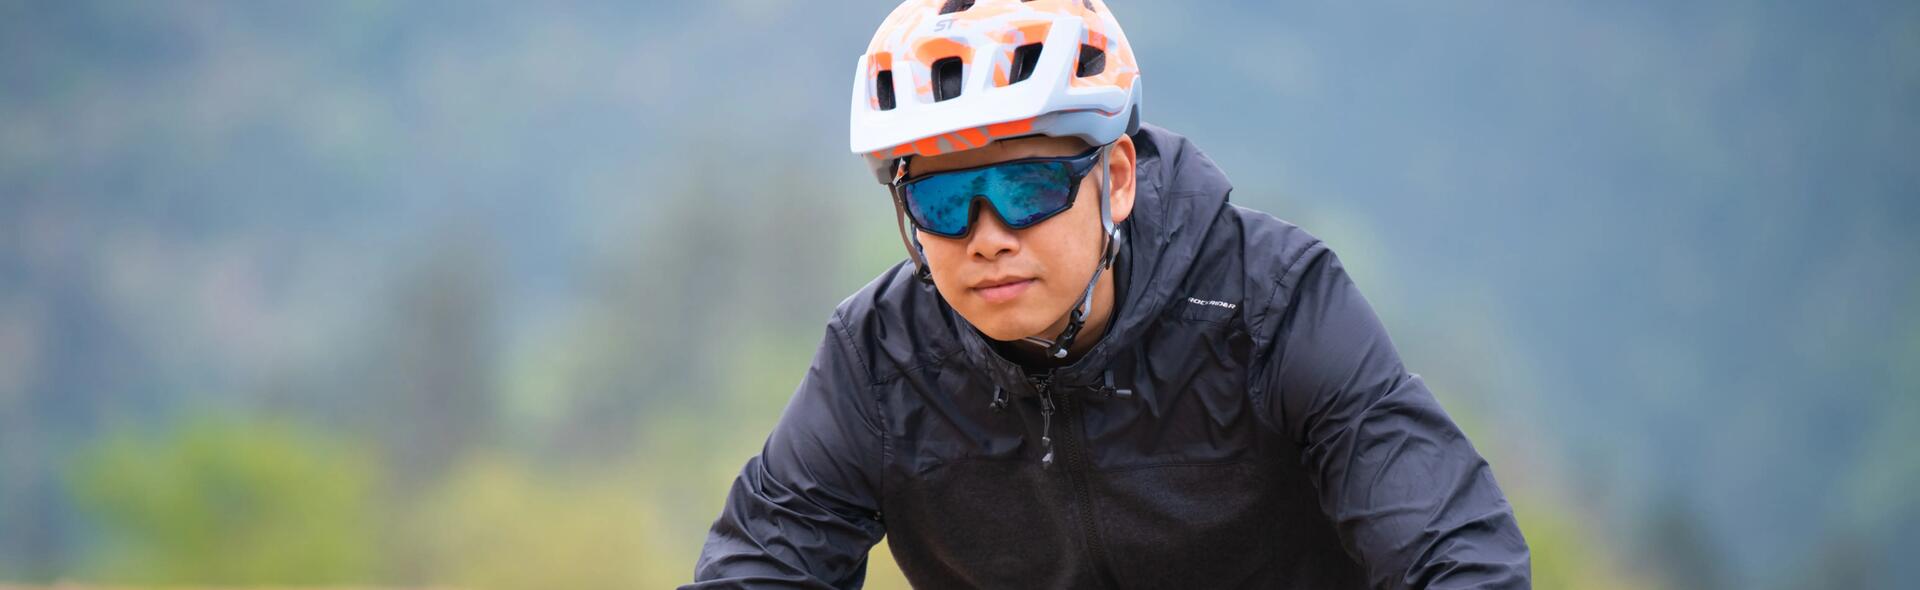 mężczyzna jadący na rowerze w okularach rowerowych  i kasku